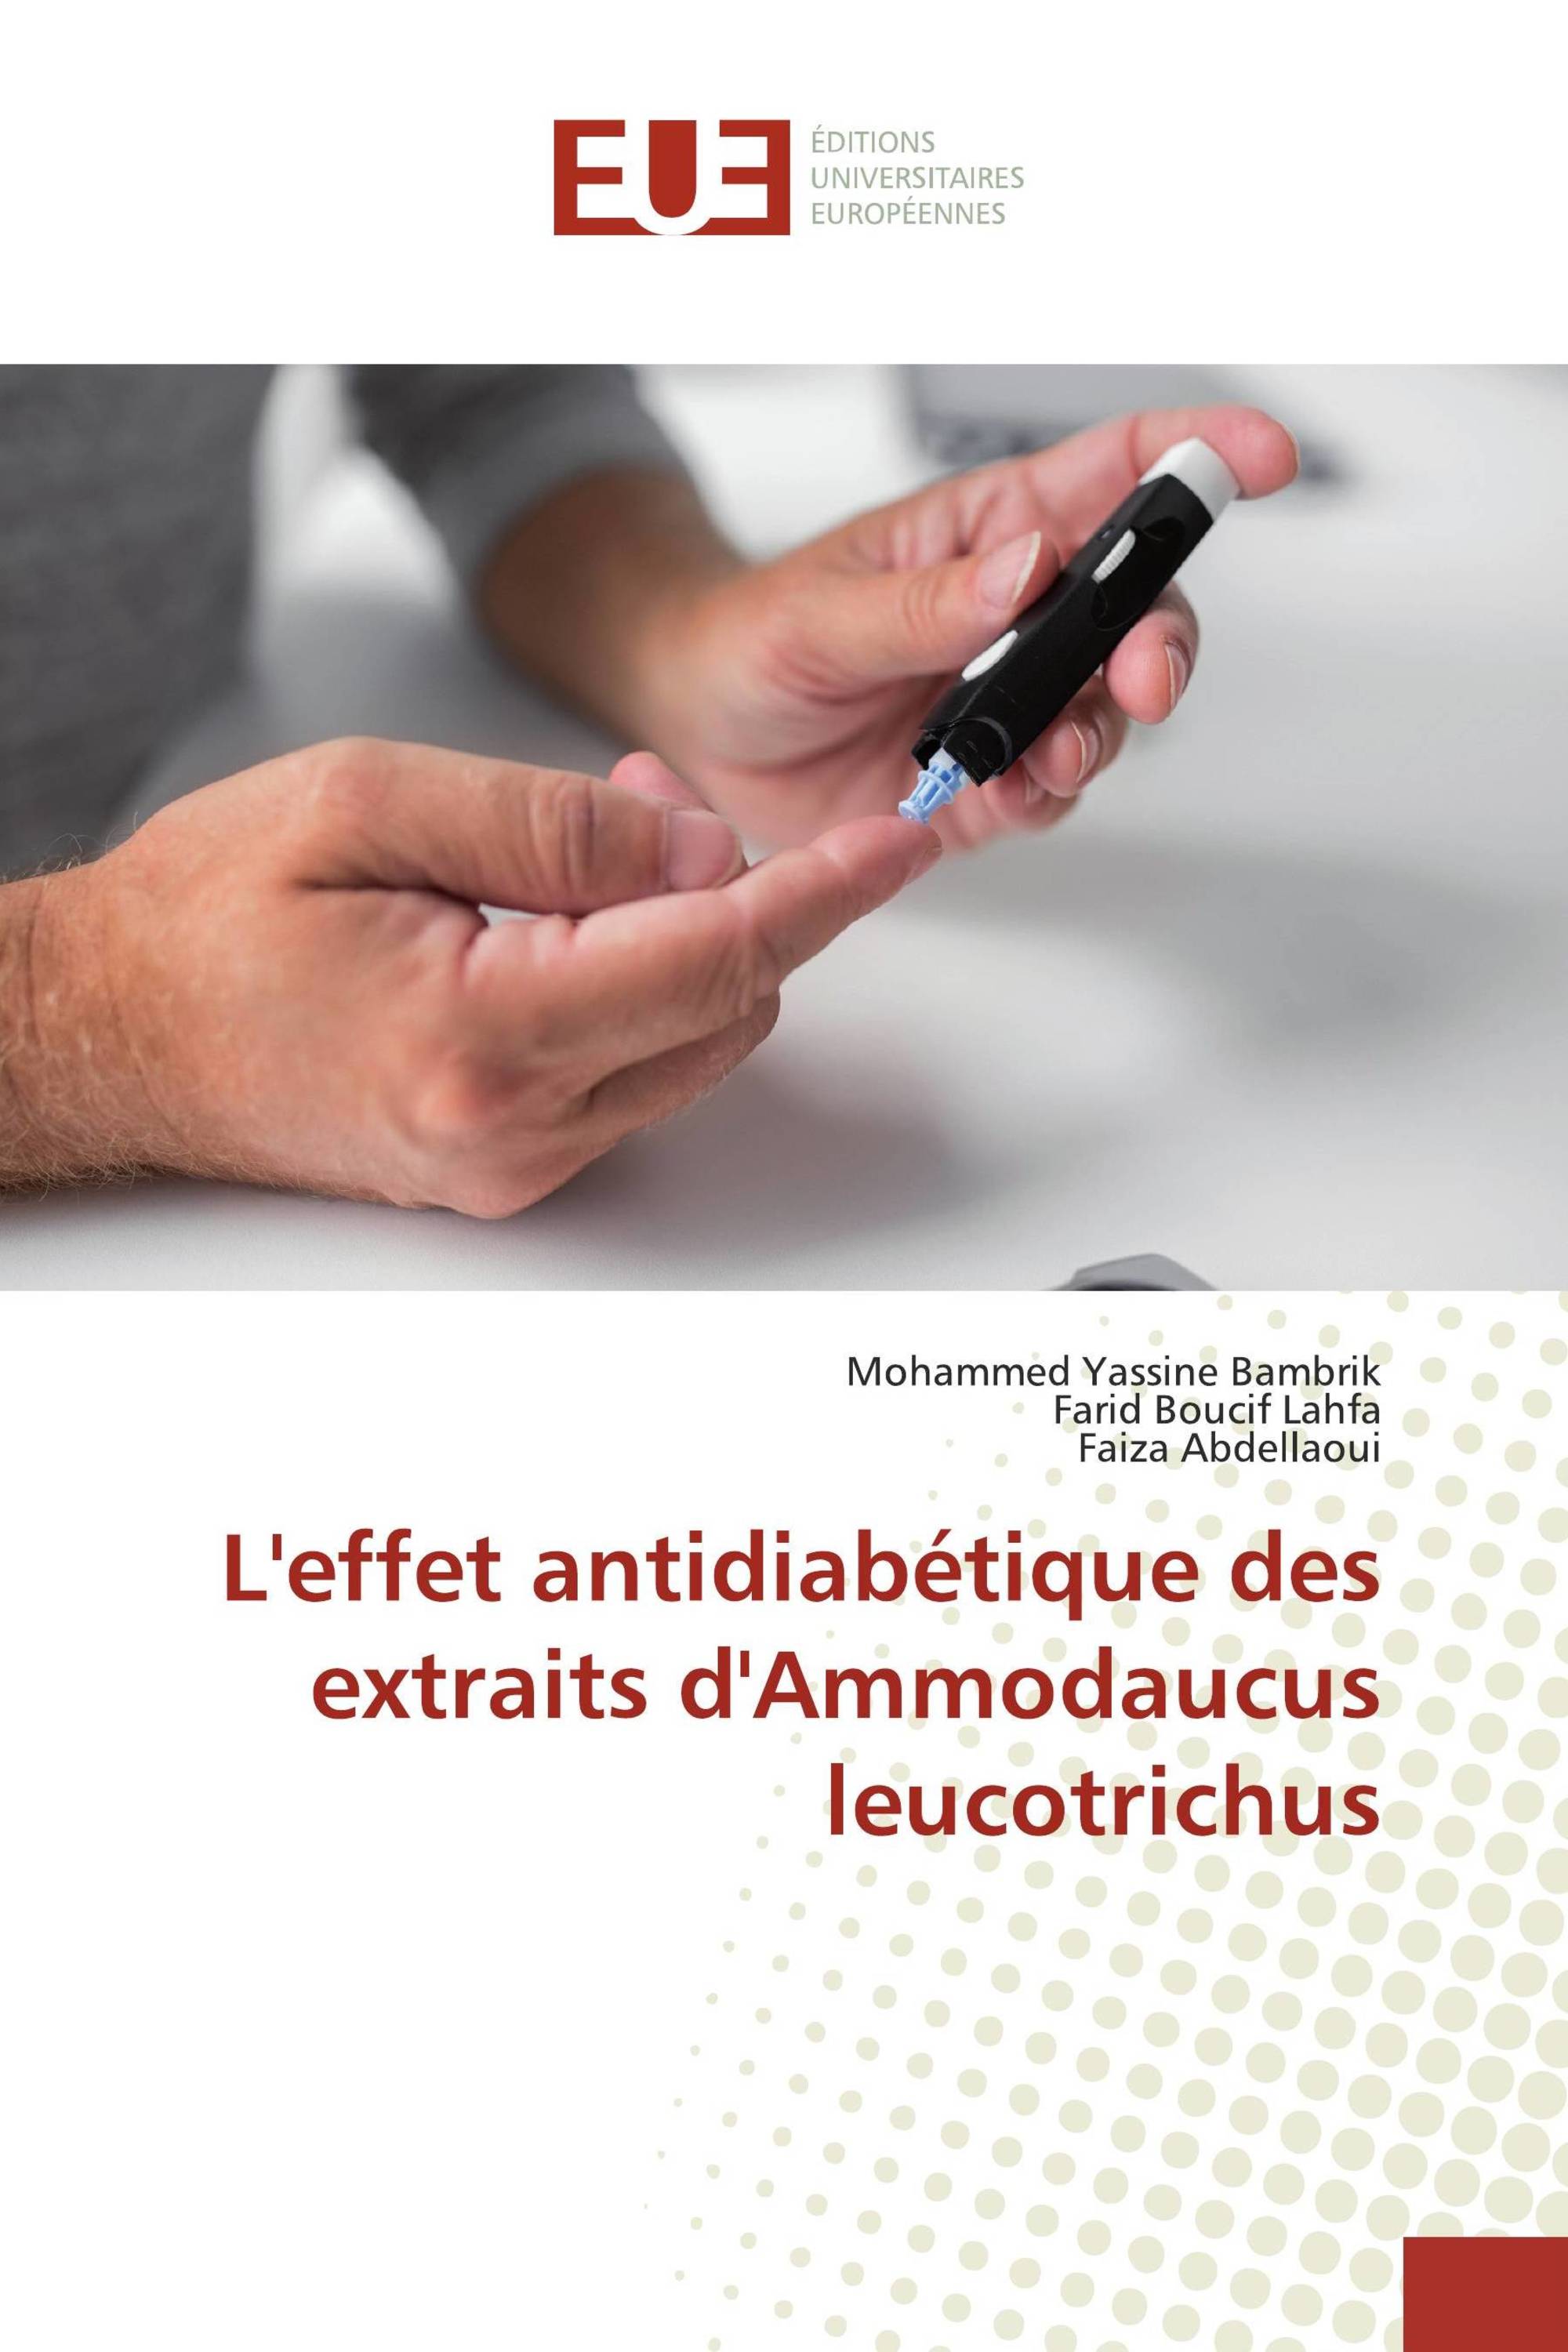 L'effet antidiabétique des extraits d'Ammodaucus leucotrichus